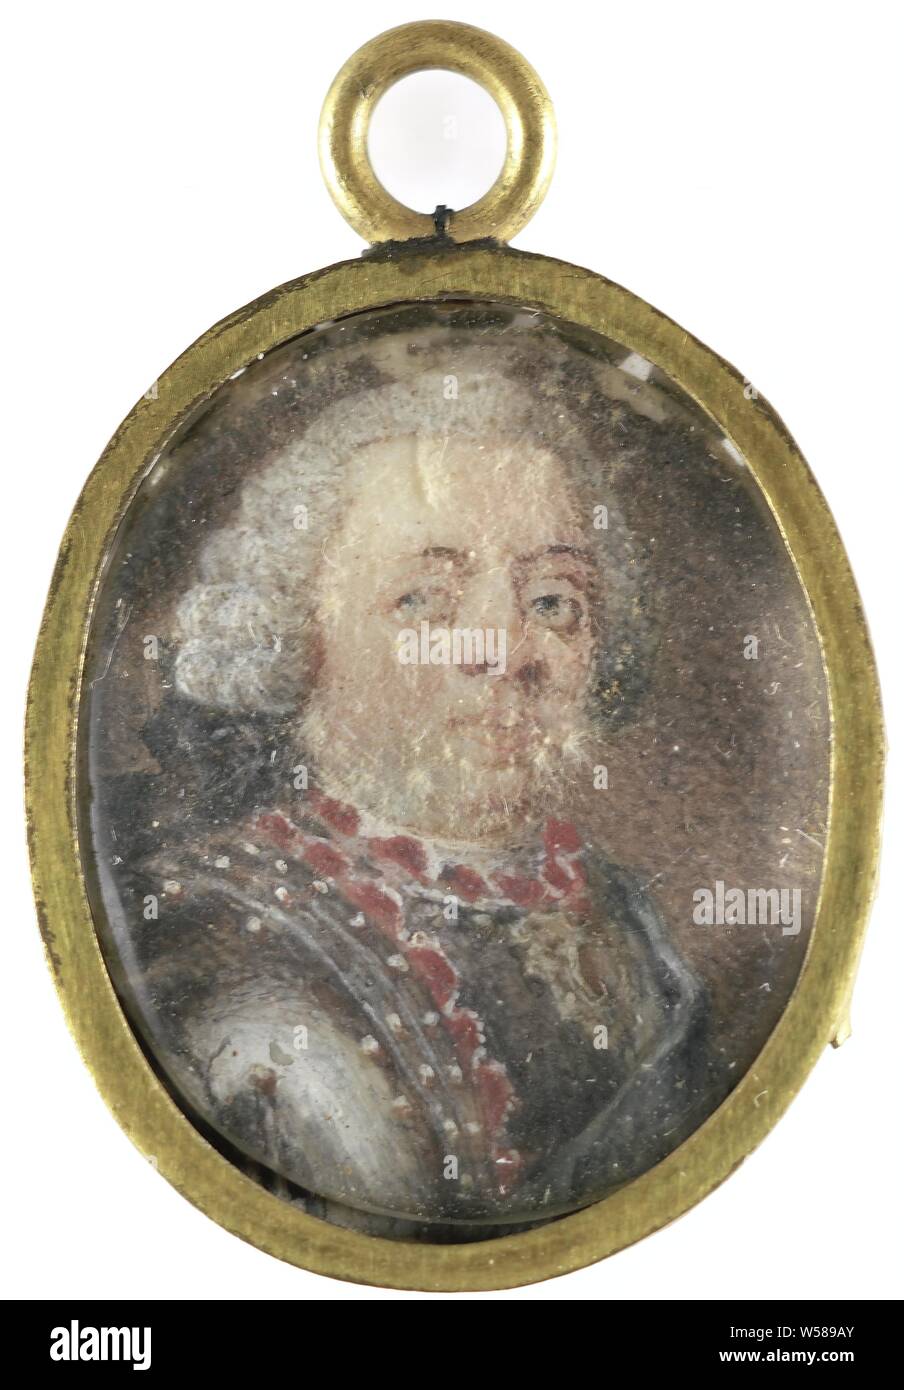 William IV (1711-51), Prinz von Oranien Nassau, Porträt von William IV (1711-51), Prinz von Oranien Nassau. Büste nach rechts, die Augen nach links, in der Rüstung. Teil der Sammlung von Porträtminiaturen, Willem IV (Prinz von Oranien-nassau), anonyme, Holland, C. 1750, Elfenbein, Metall, Glas, h 2,1 cm x B 1,8 cm h 2,8 cm x B 1,6 cm x T 0,3 cm Stockfoto